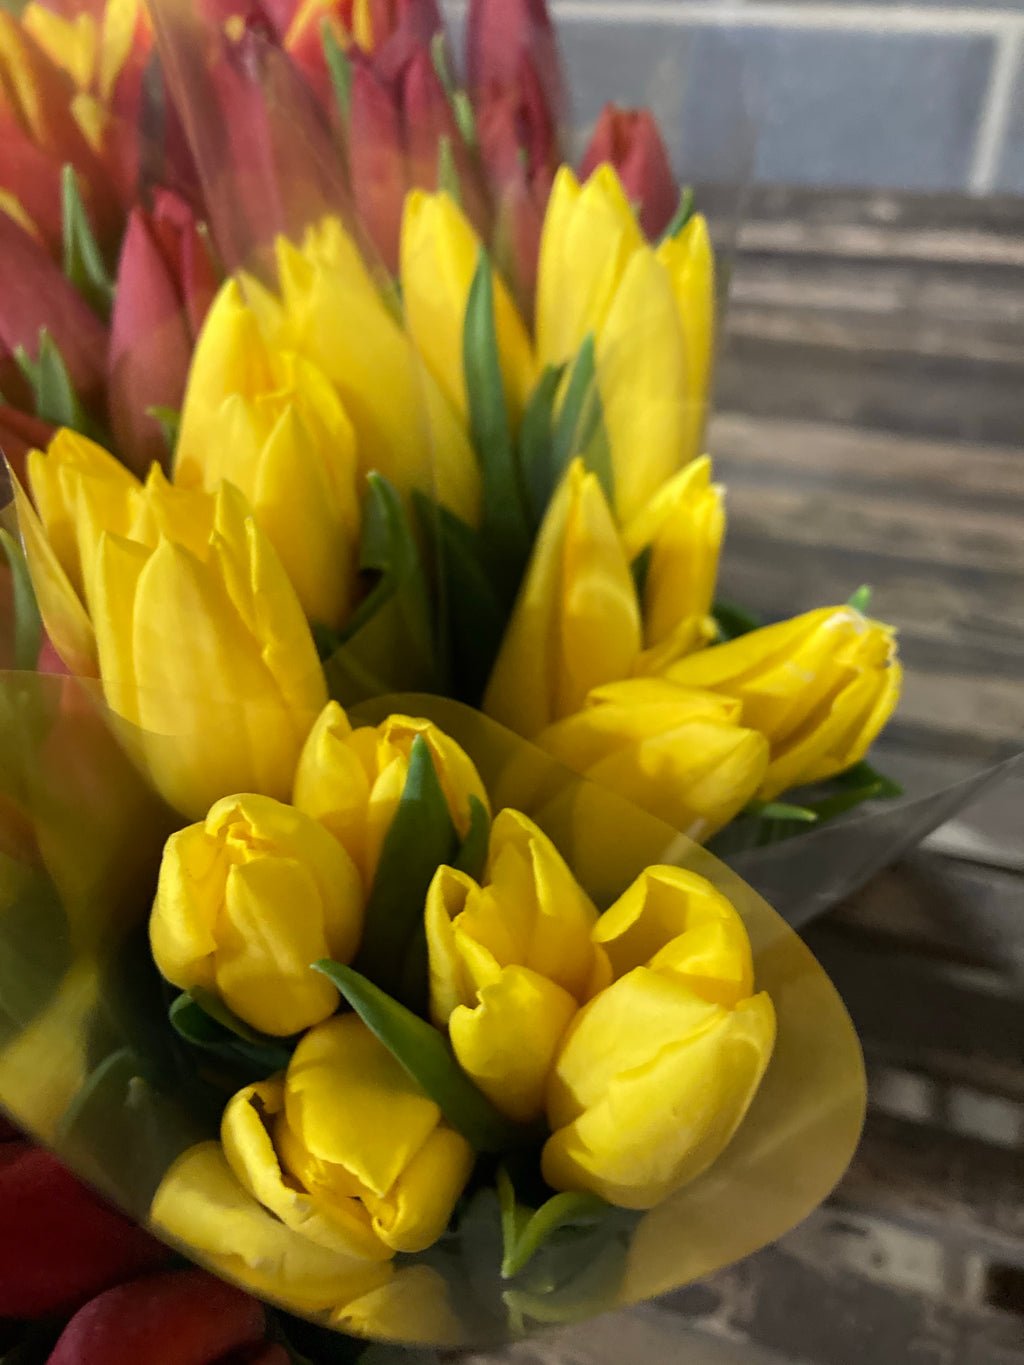 5 x Yellow Tulip 'Yokohama' bulbs (Free UK Postage)